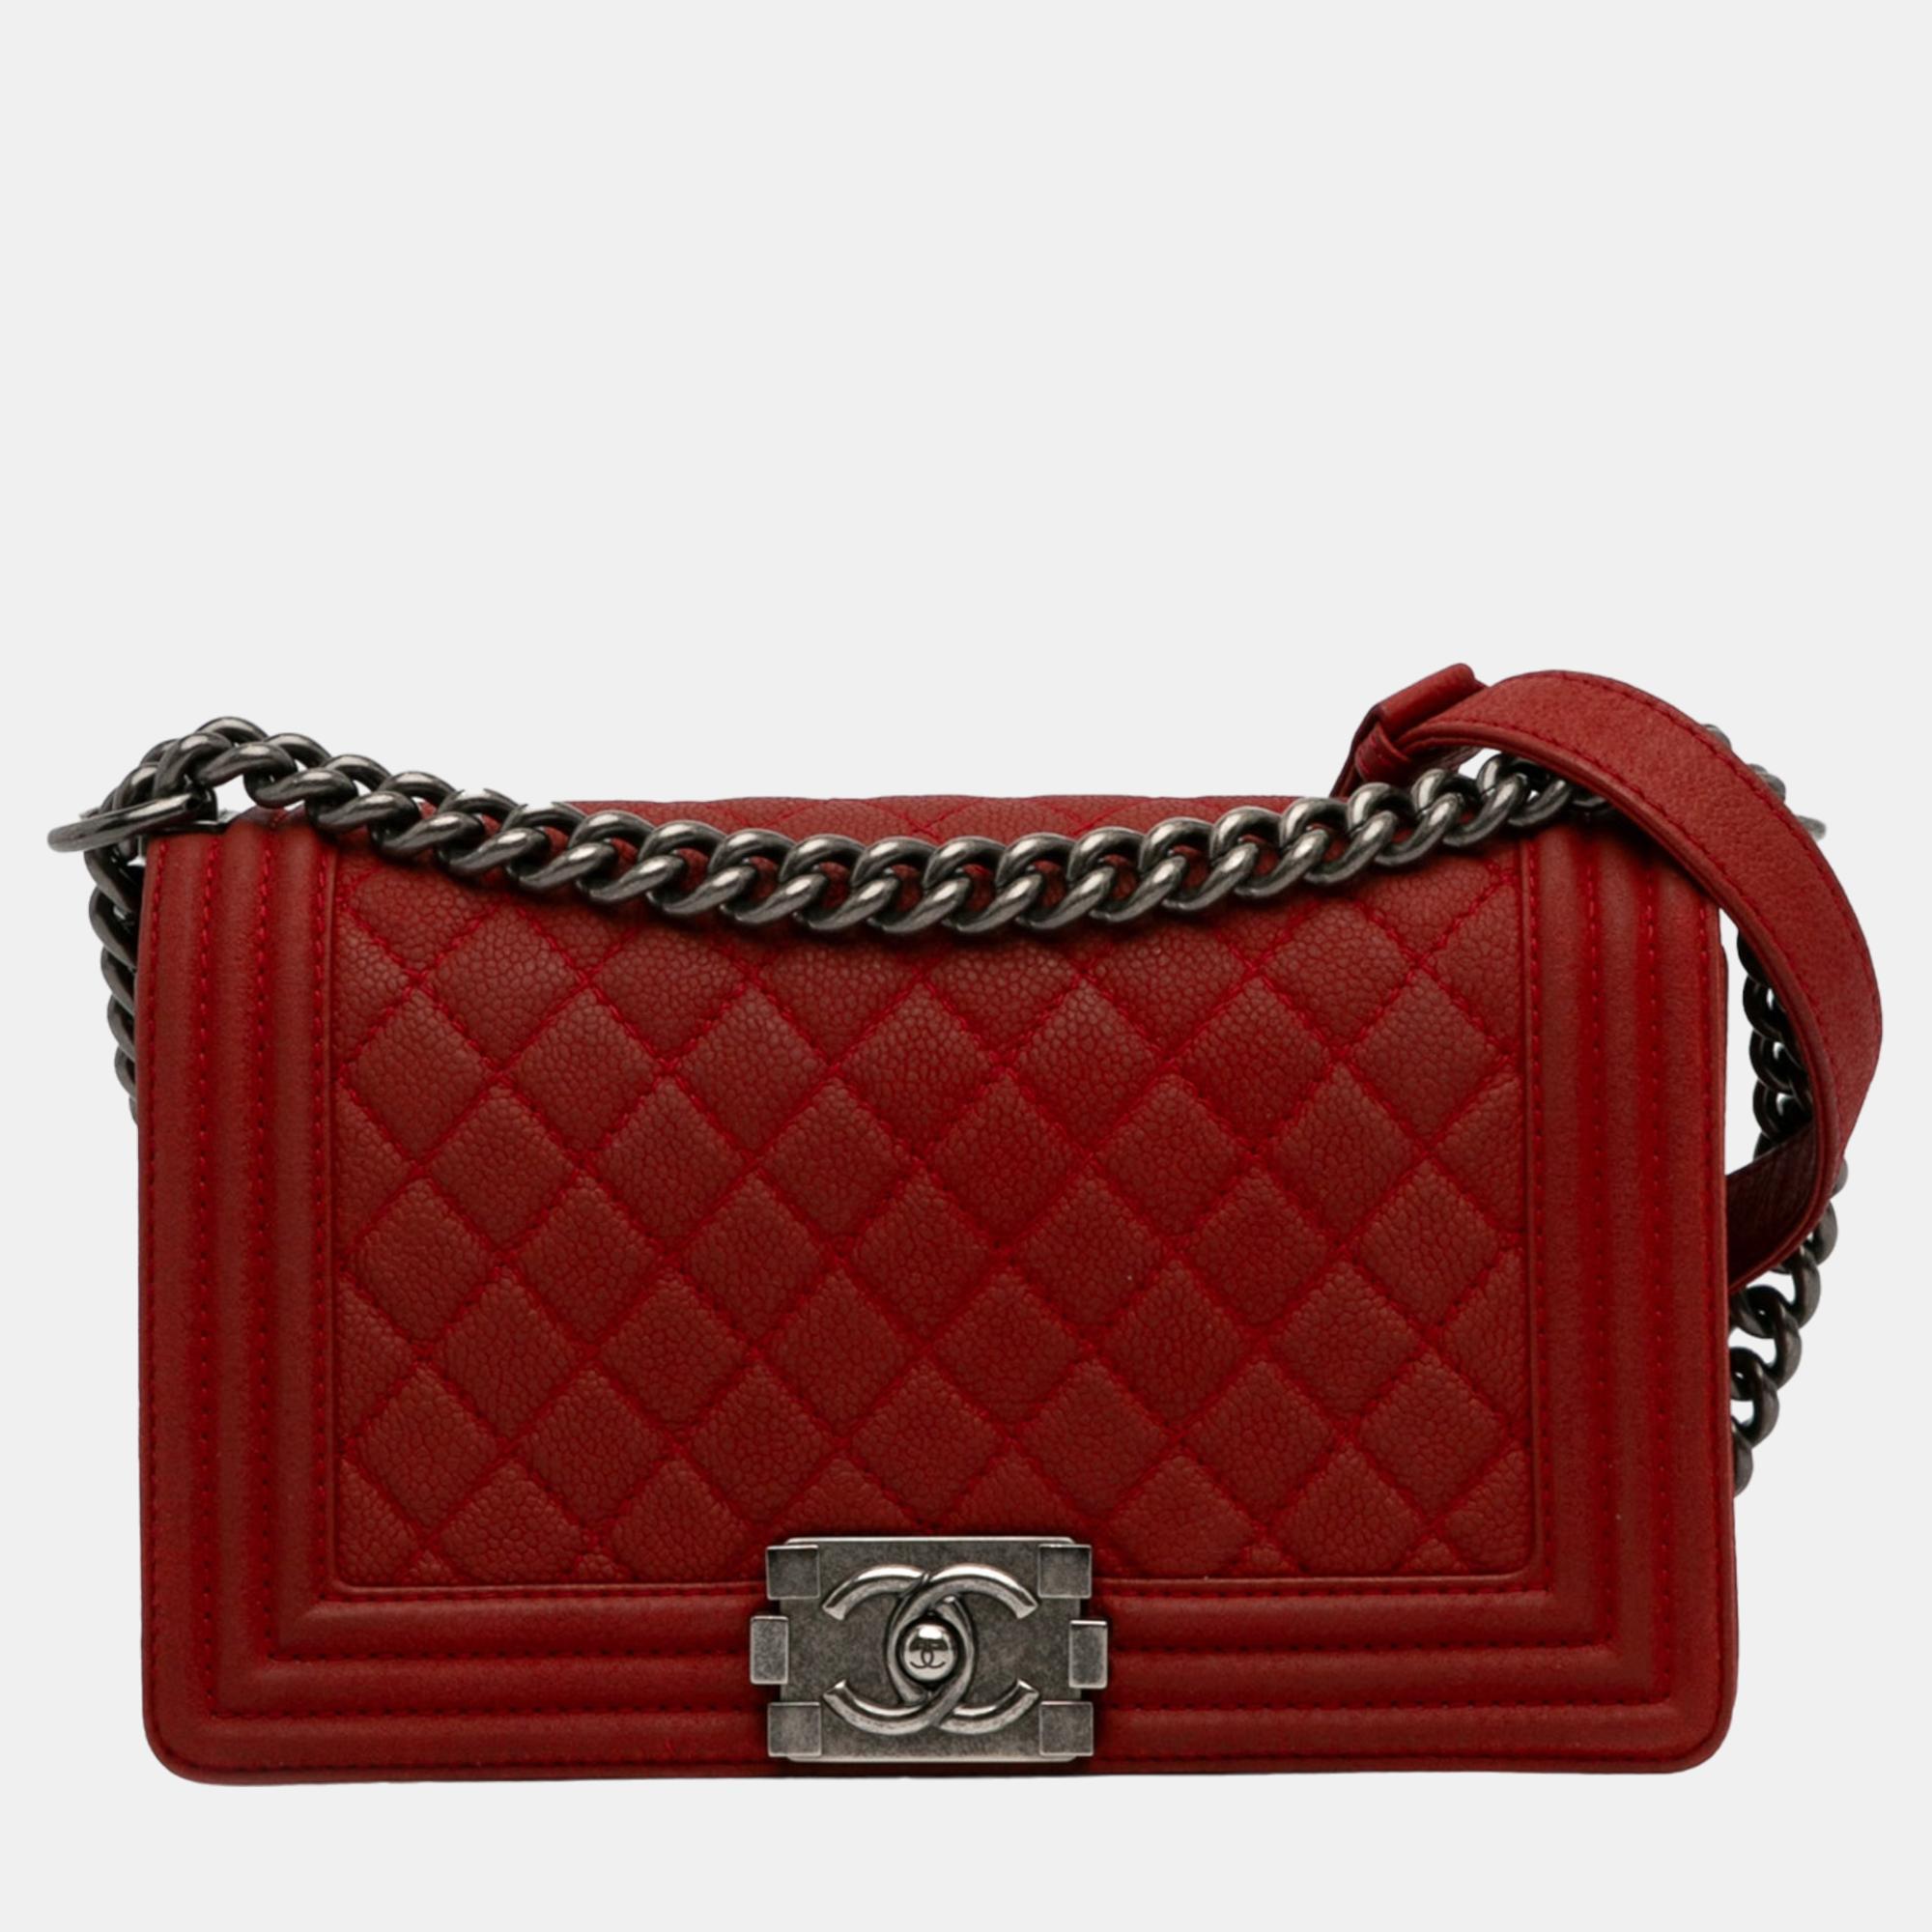 Chanel red medium caviar boy flap bag